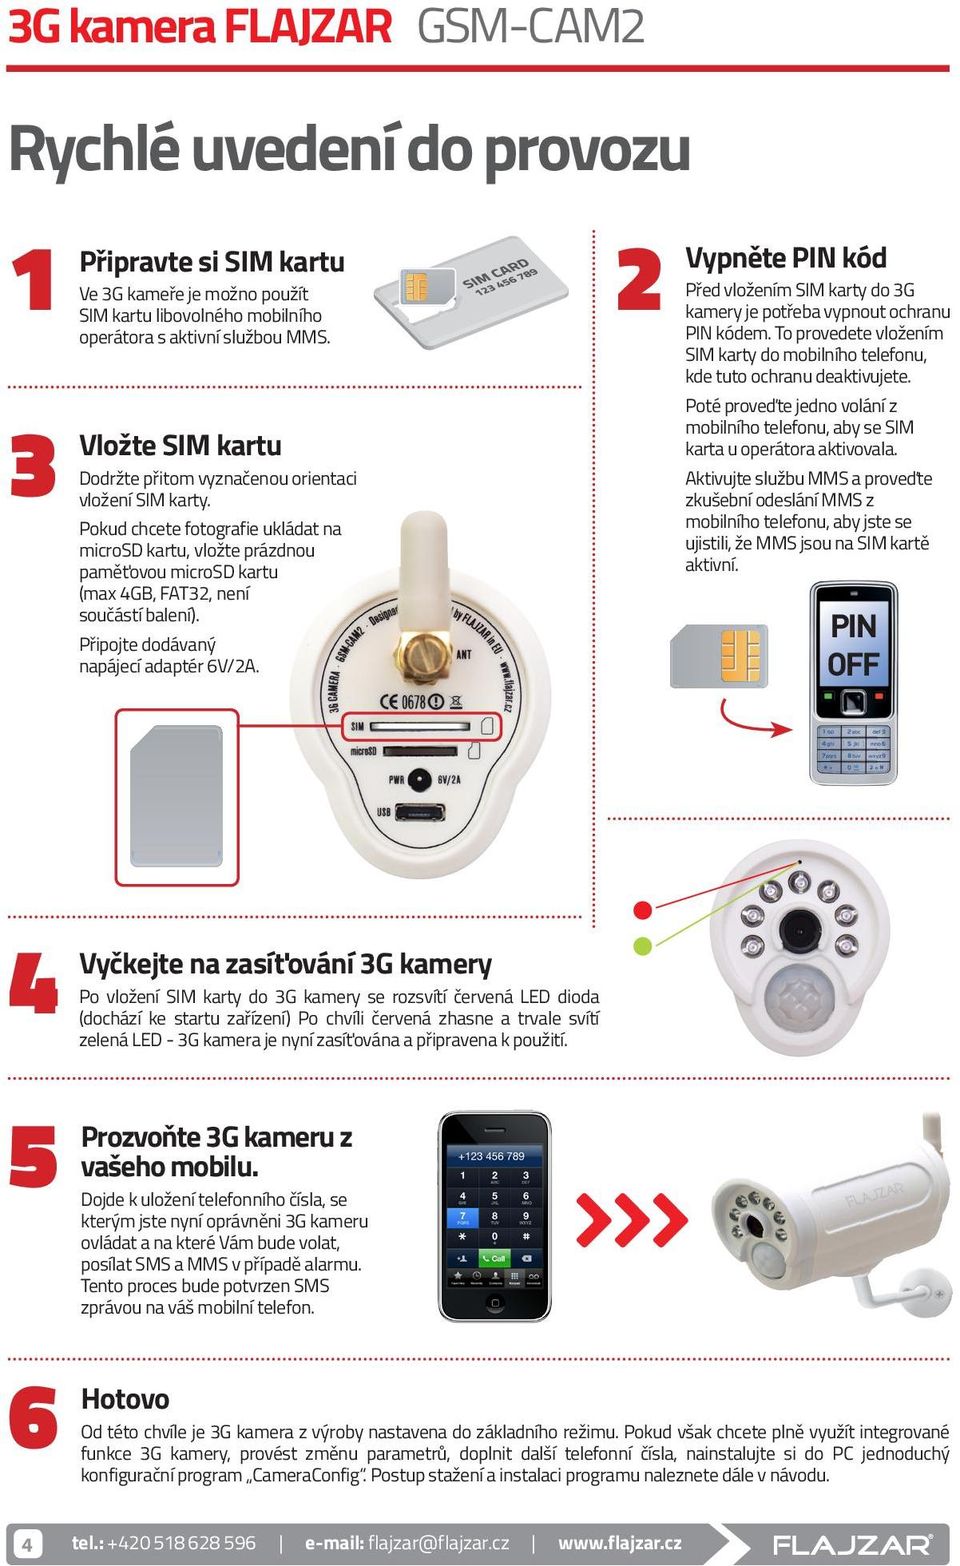 návod k obsluze 3G kamera FLAJZAR GSM-CAM2 Český výrobek - PDF Free Download